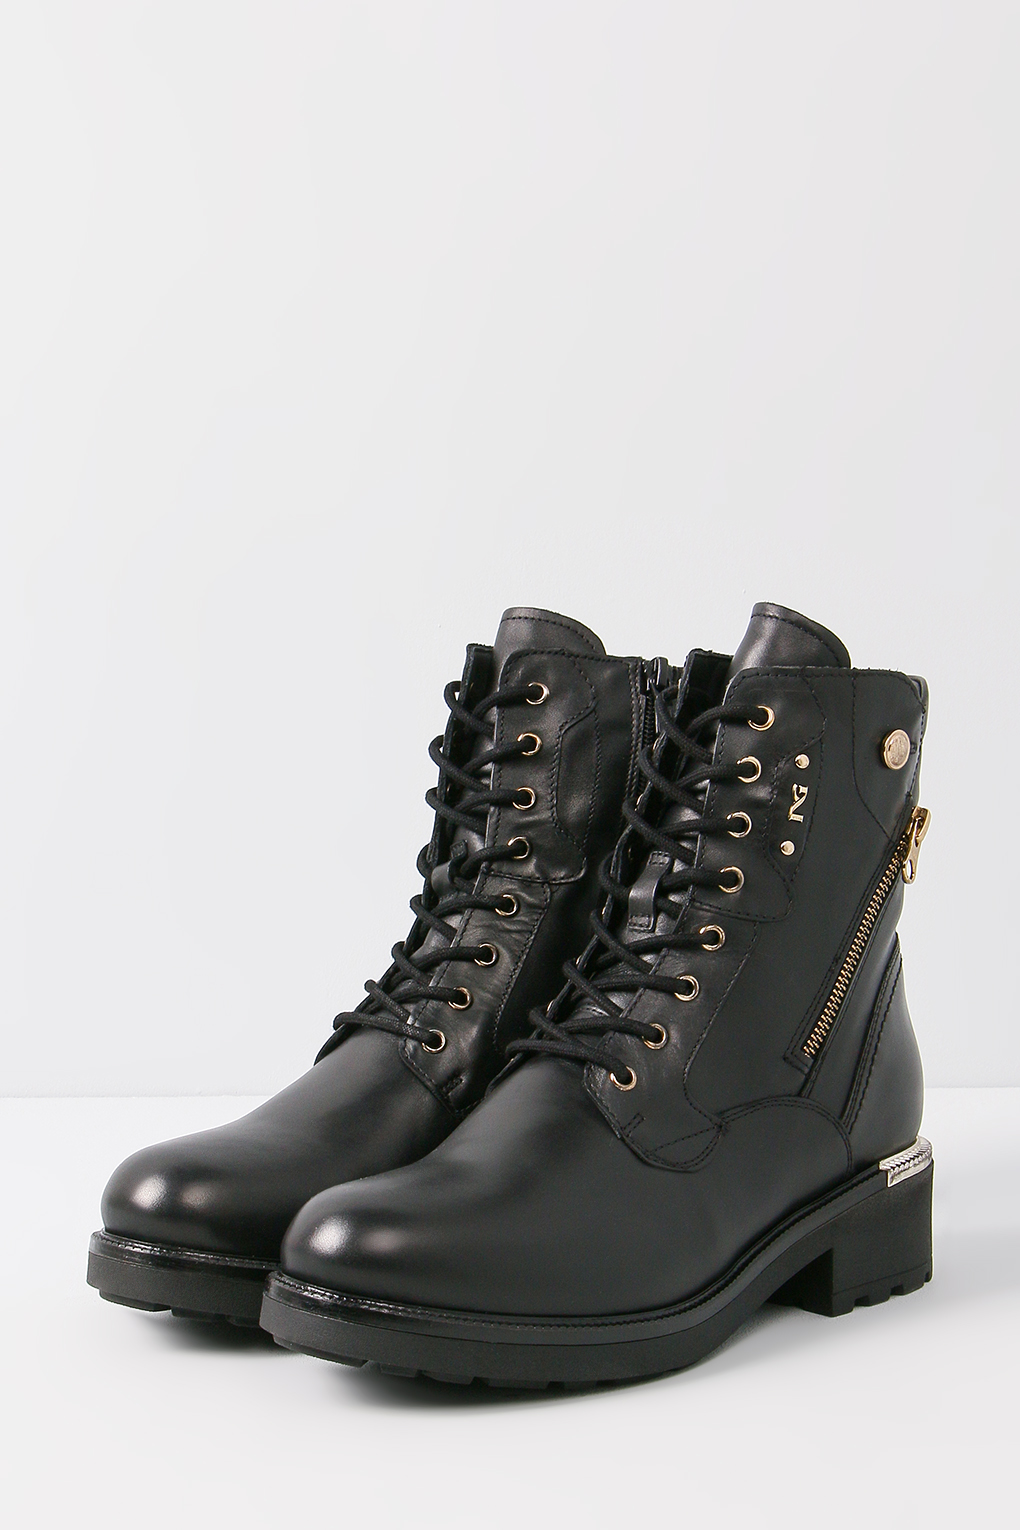 Ботинки женские Nero Giardini I205850D черные 37 EU